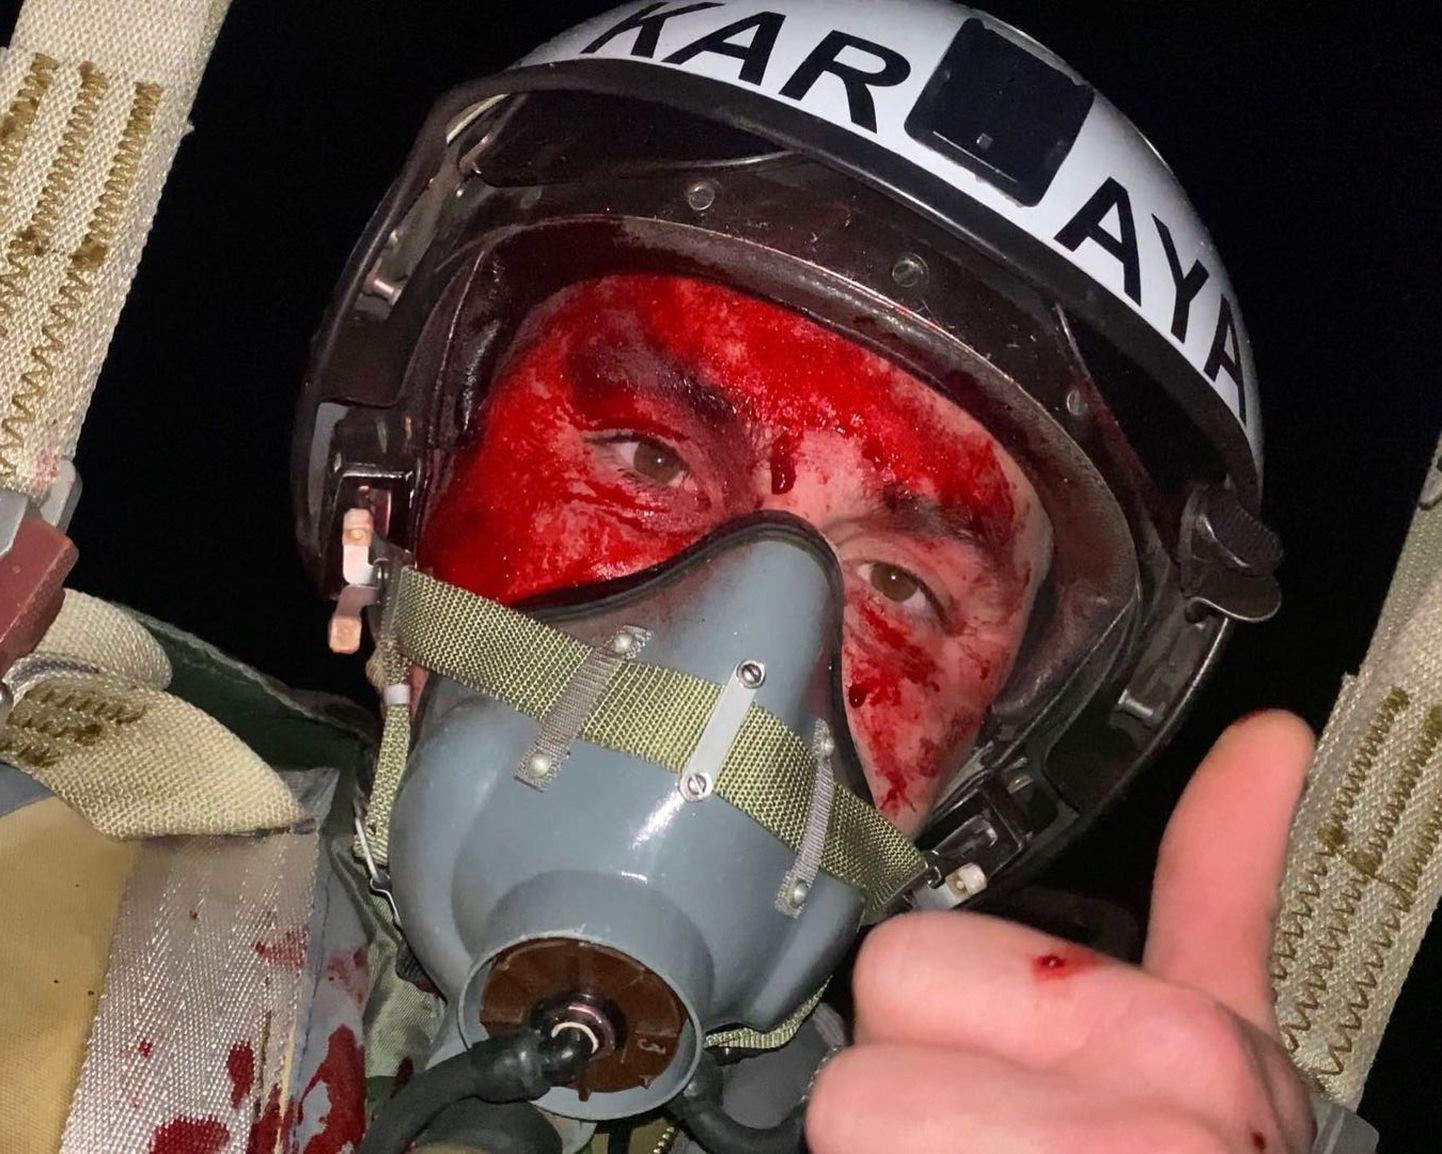 Katapulteerumine pärast lennuki kahjustada saamist. Ukraina sõjalennuväe piloot koodnimega Karaja. Foto Vadim Vorošilovi isiklikust arhiivist